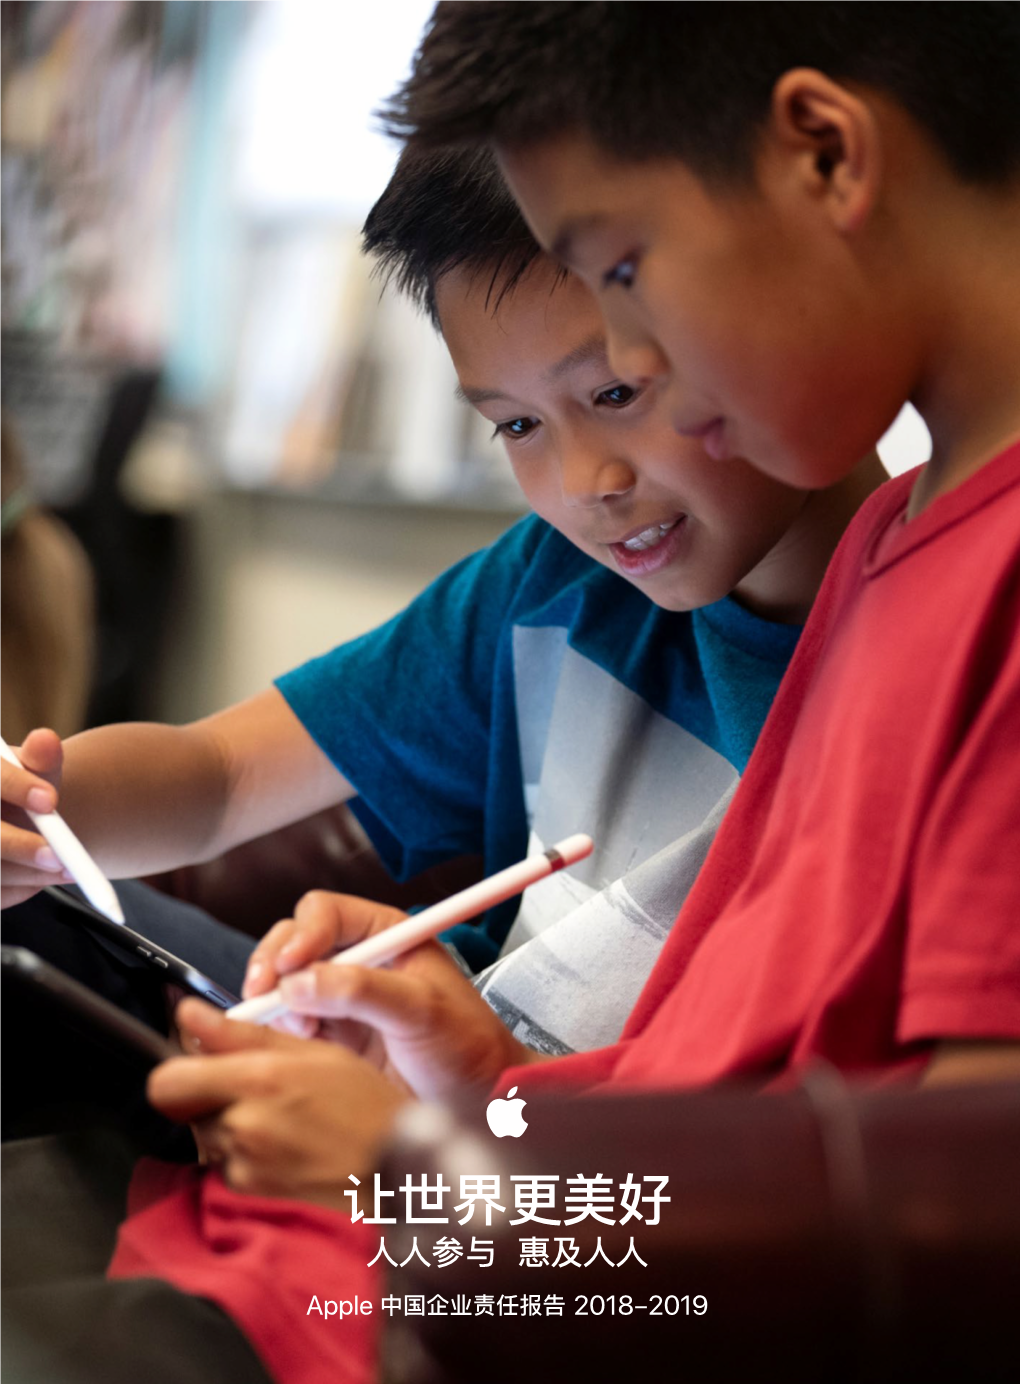 让世界更美好 人人参与 惠及人人 Apple 中国企业责任报告 2018-2019